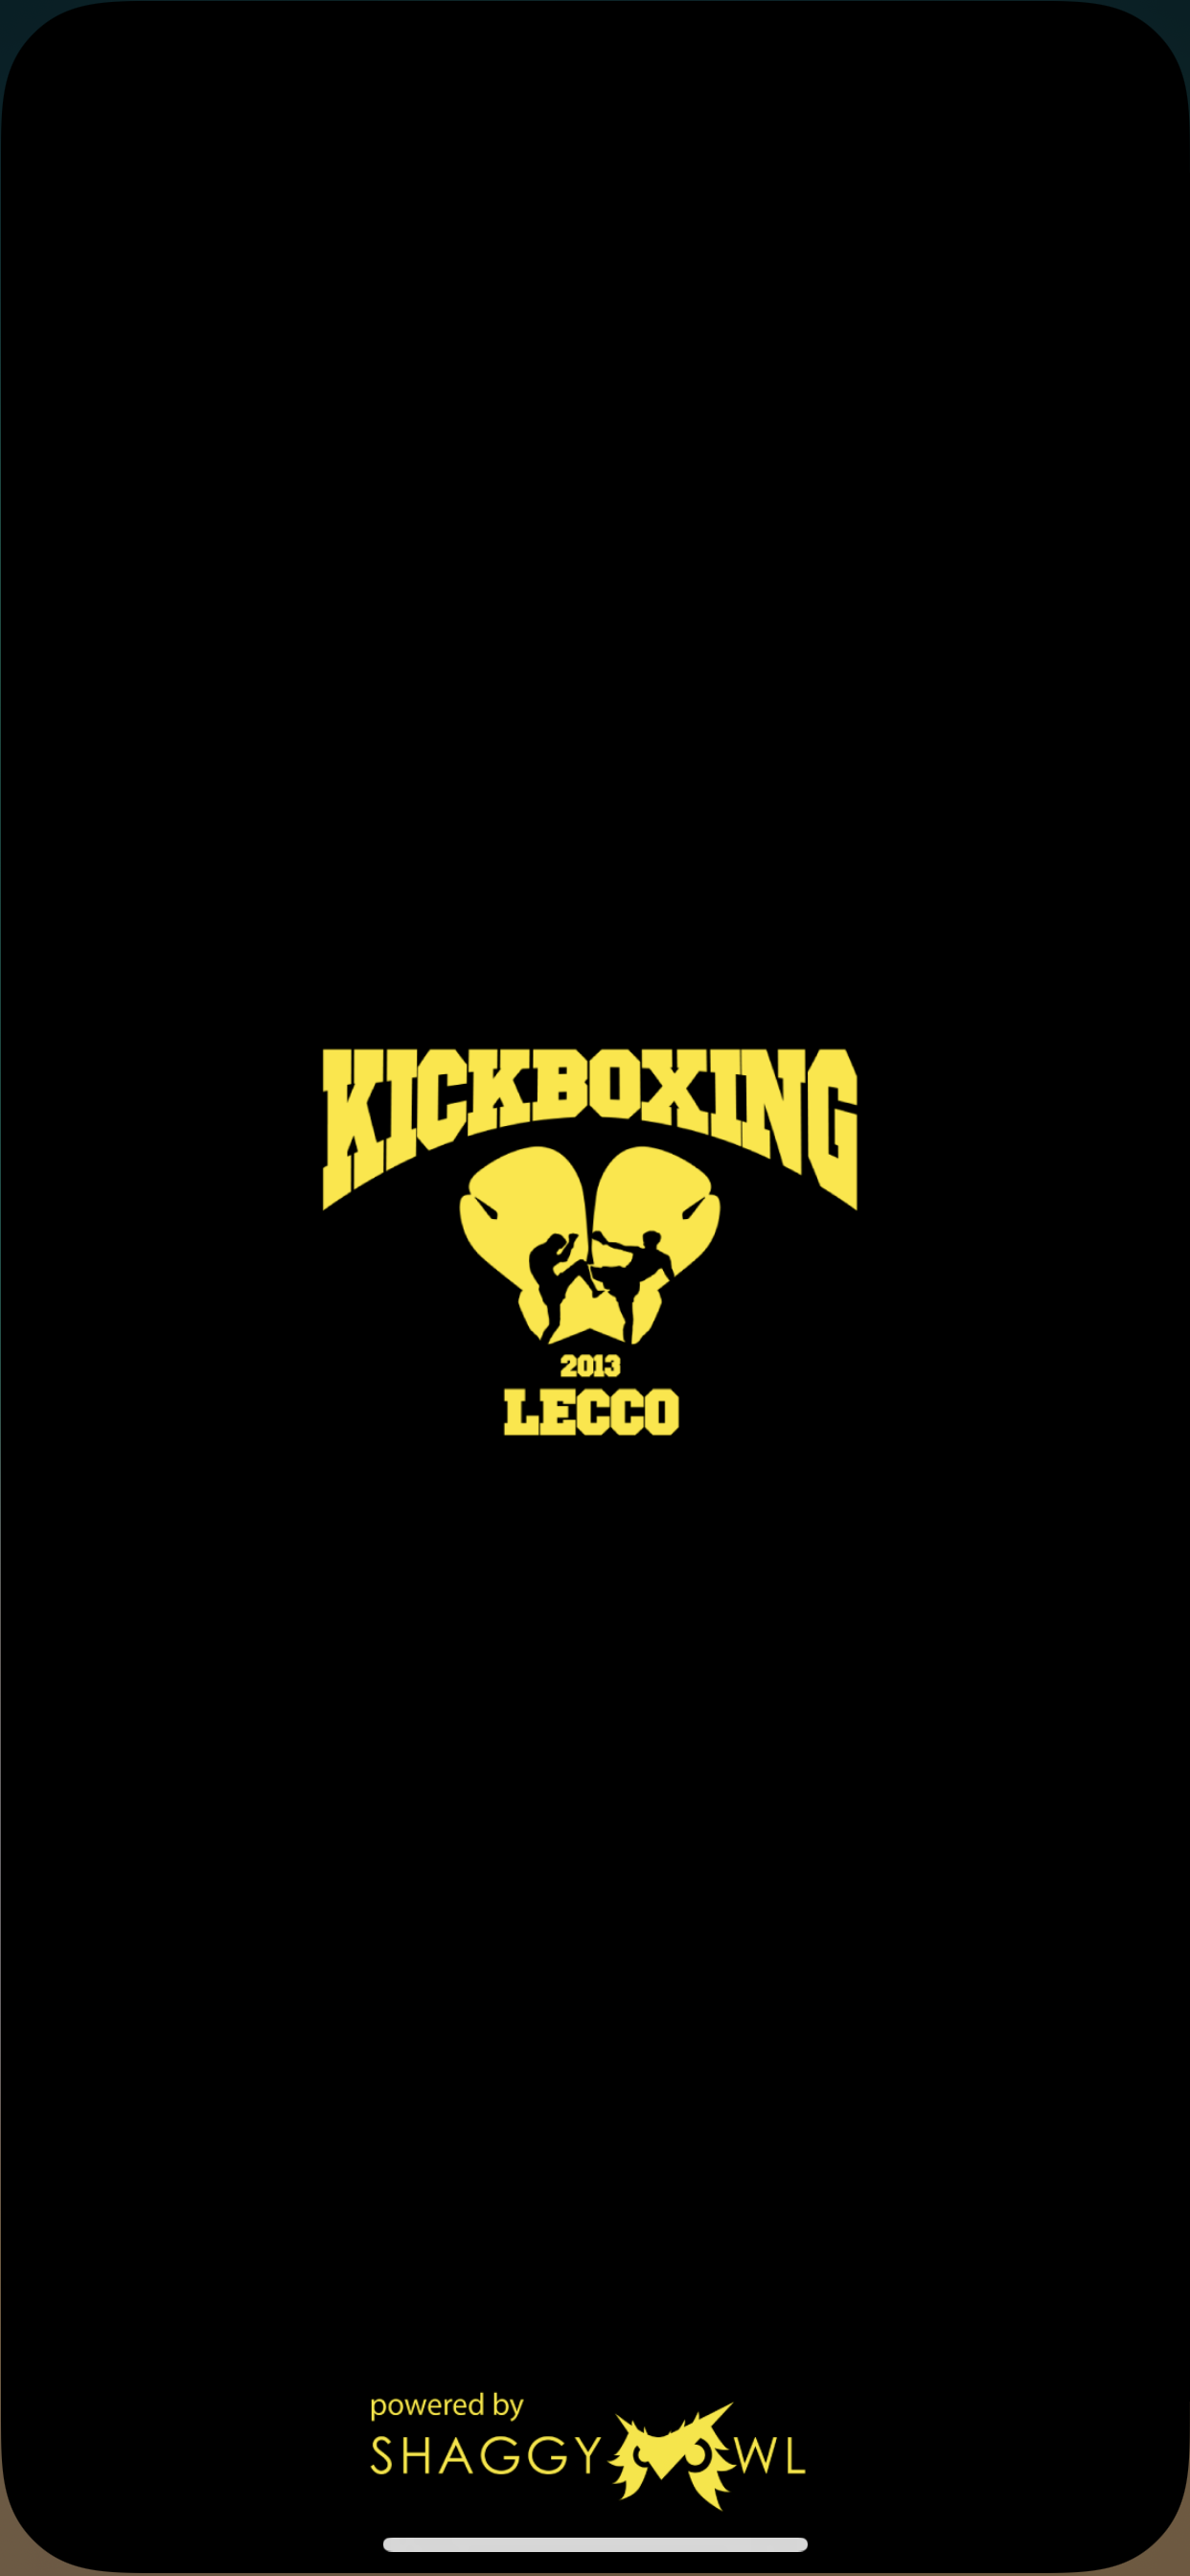 KickBoxing Lecco